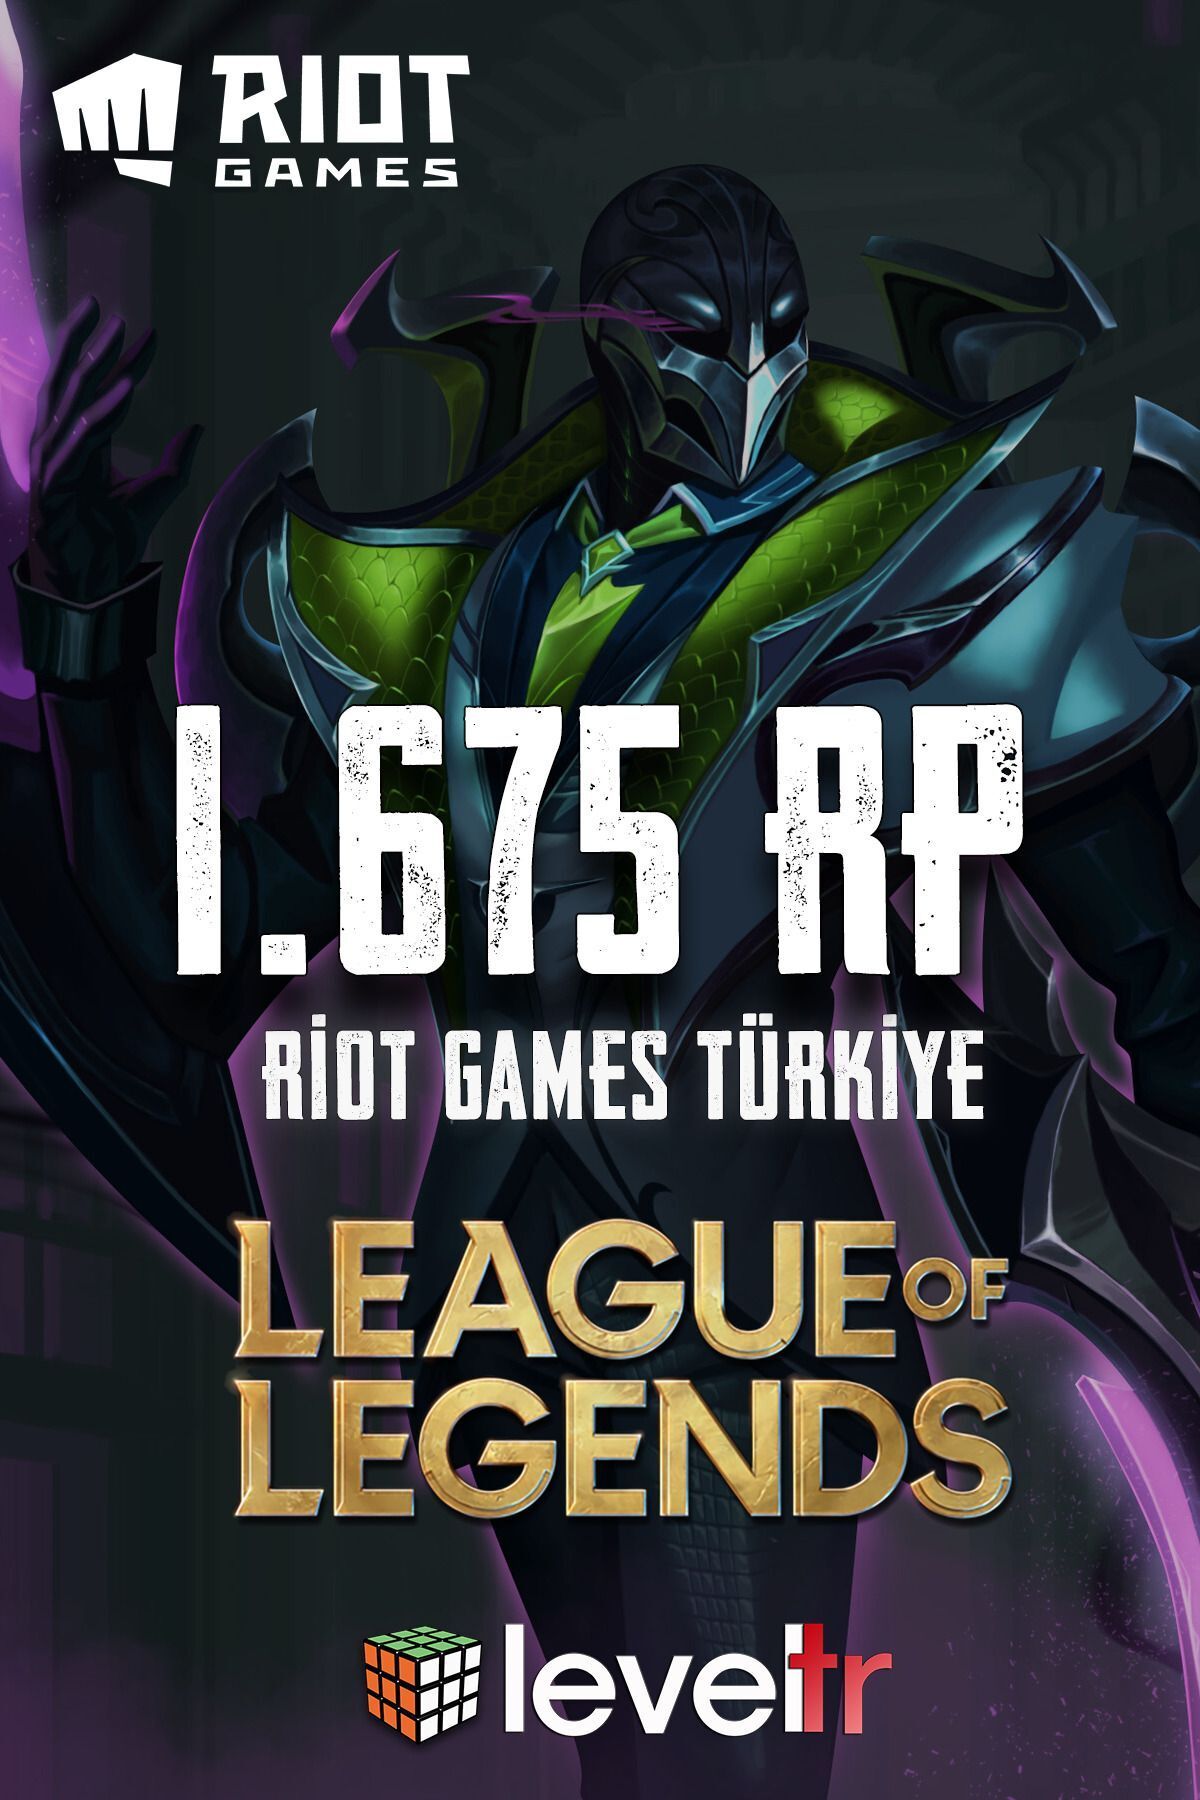 Riot Games League of Legends 1675 RP - Riot Games - LOL